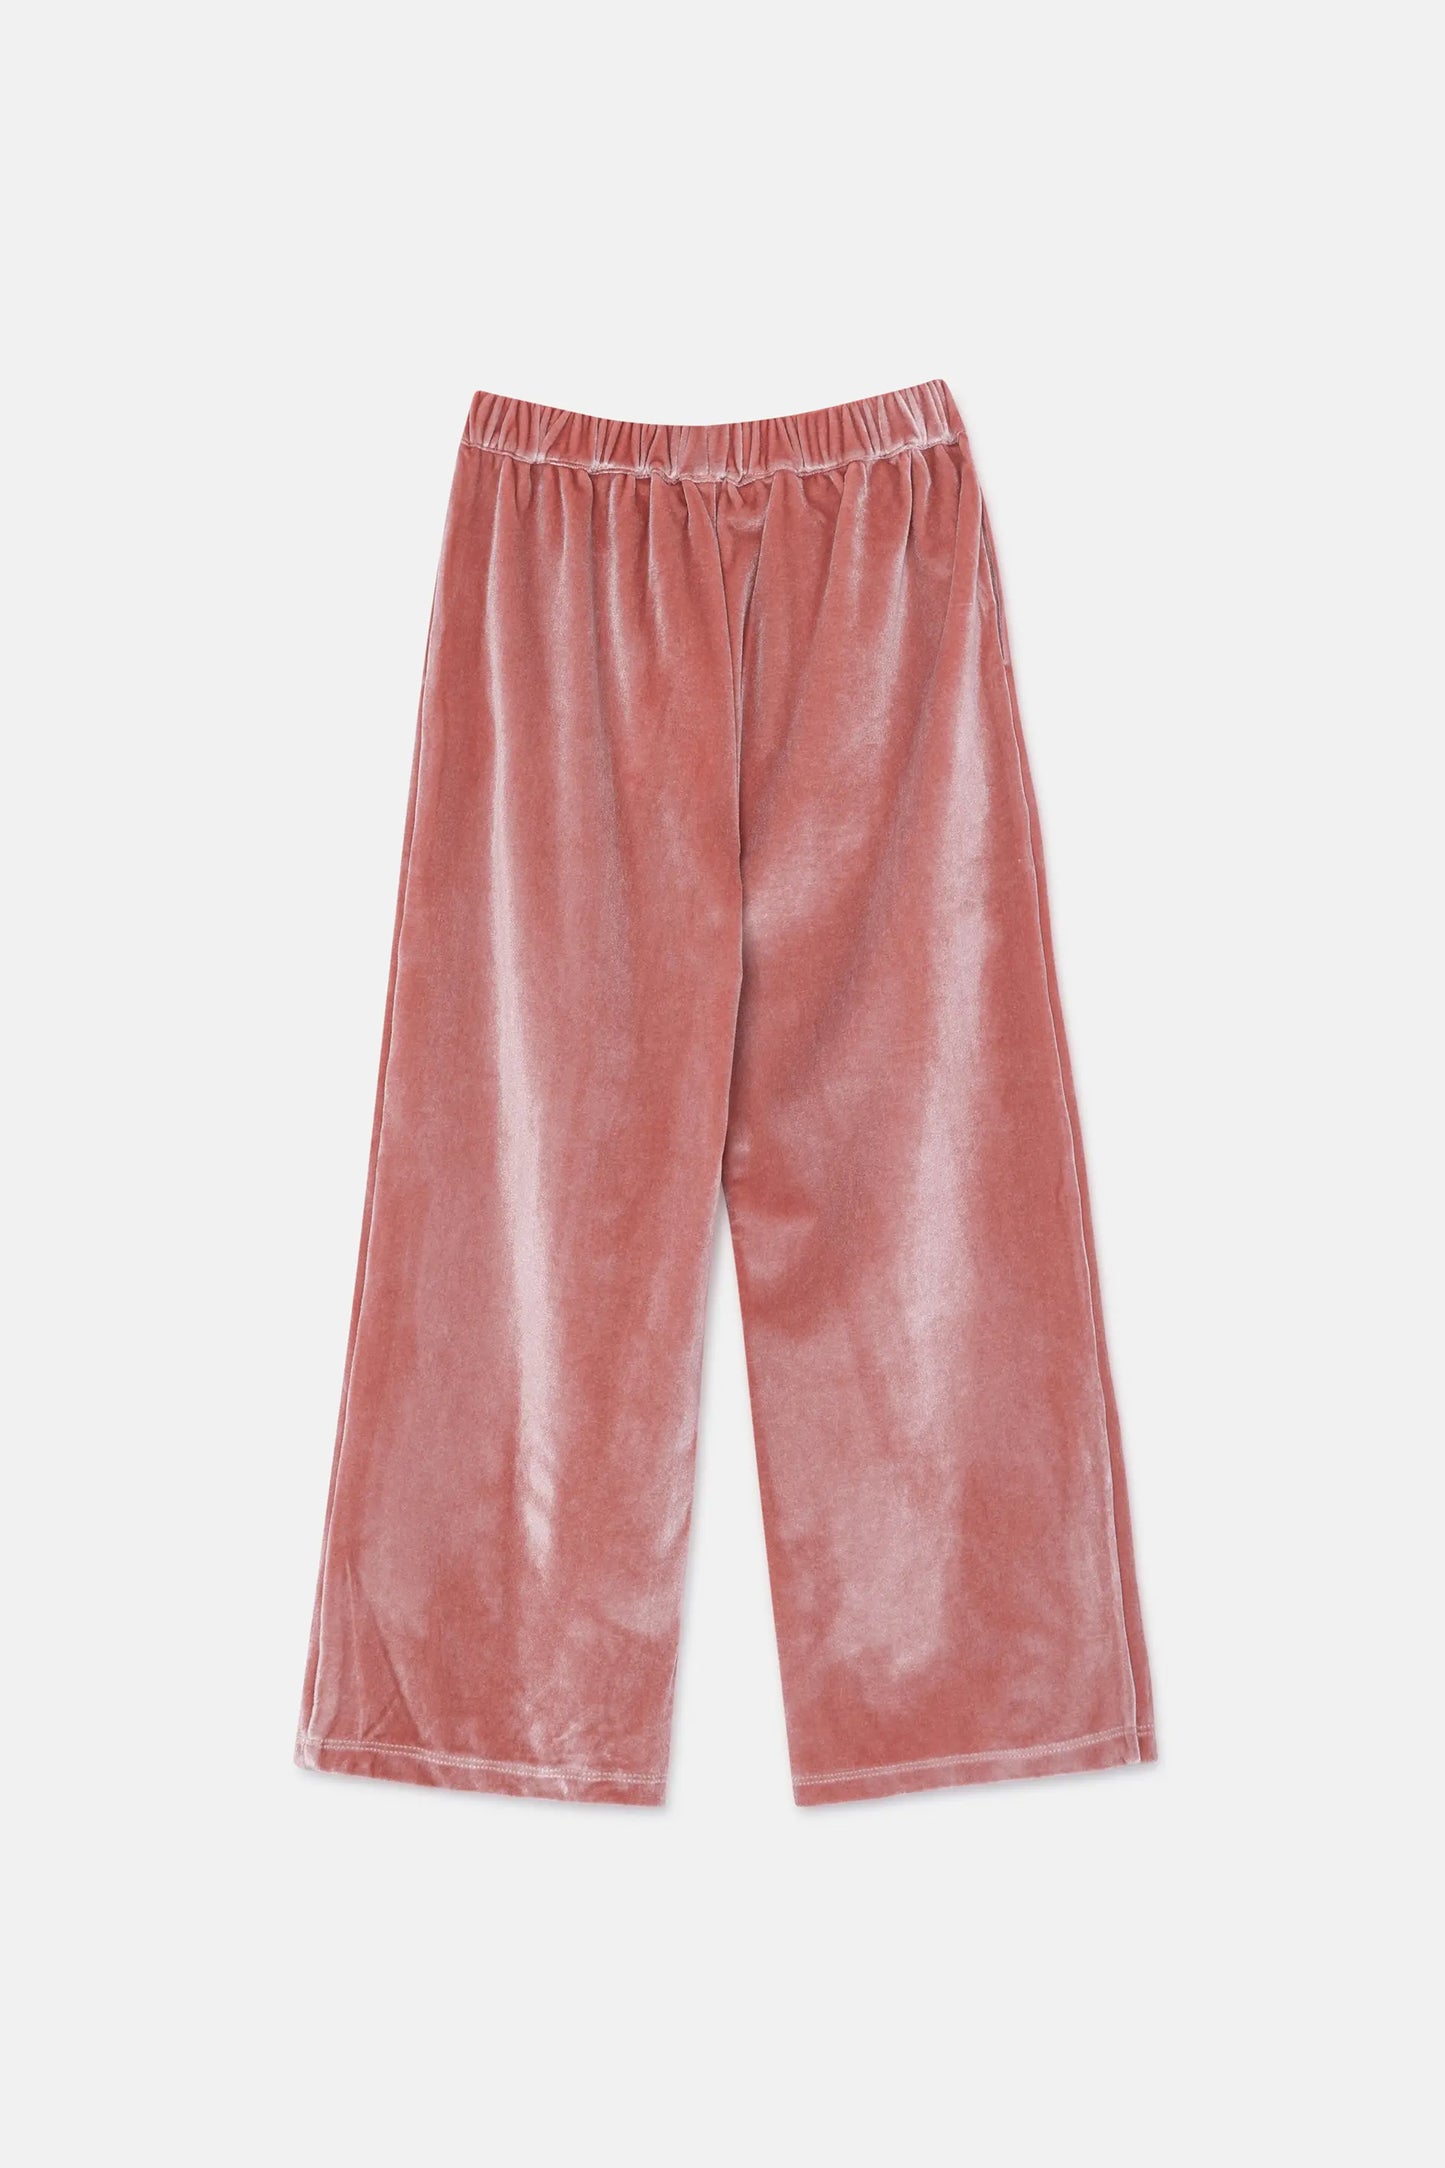 Pantalón unisex en terciopelo rosa